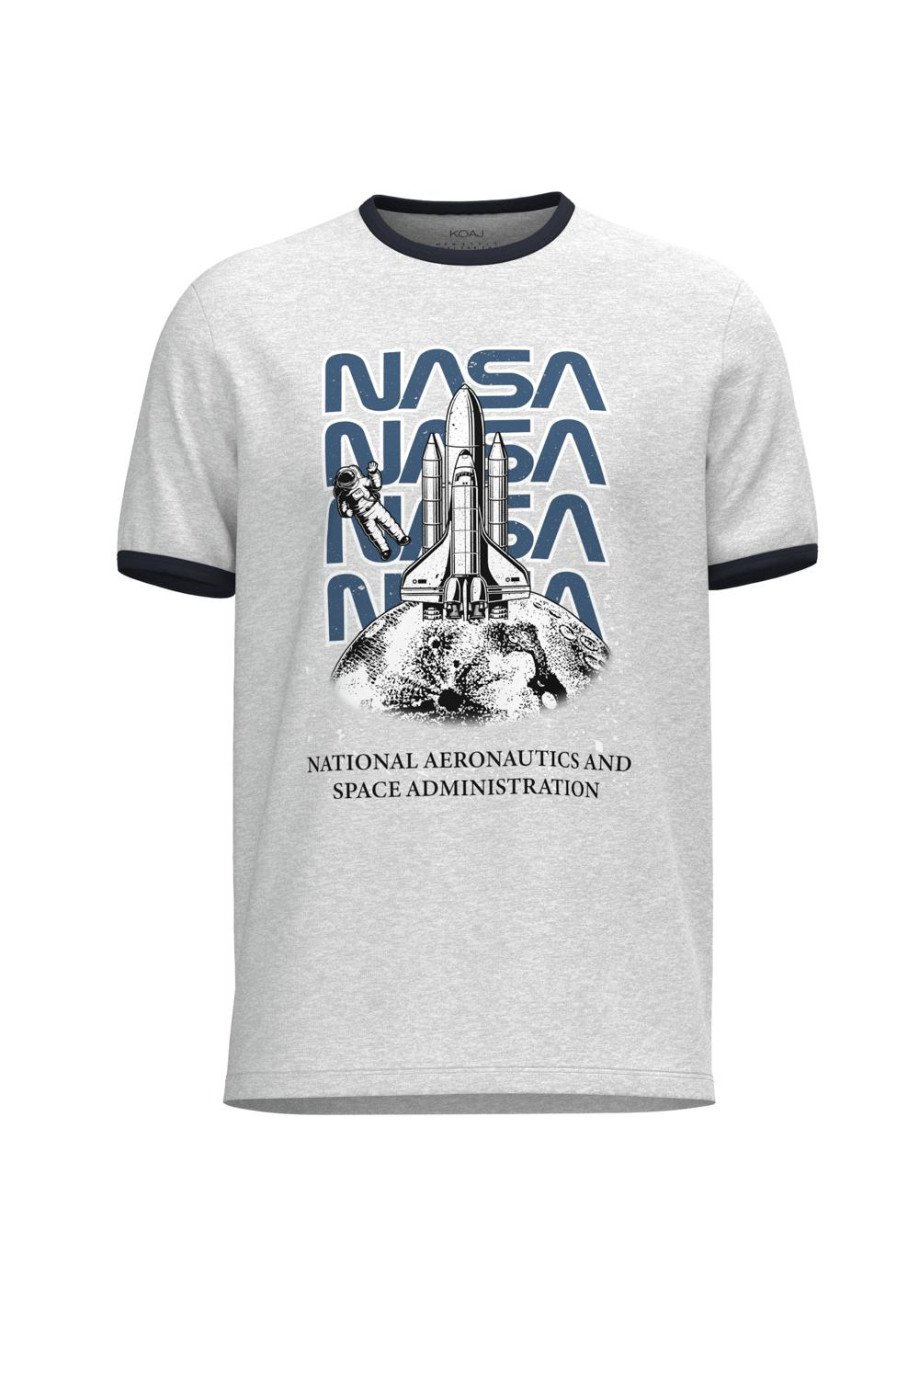 Camiseta unicolor con contrastes, arte de NASA y manga corta